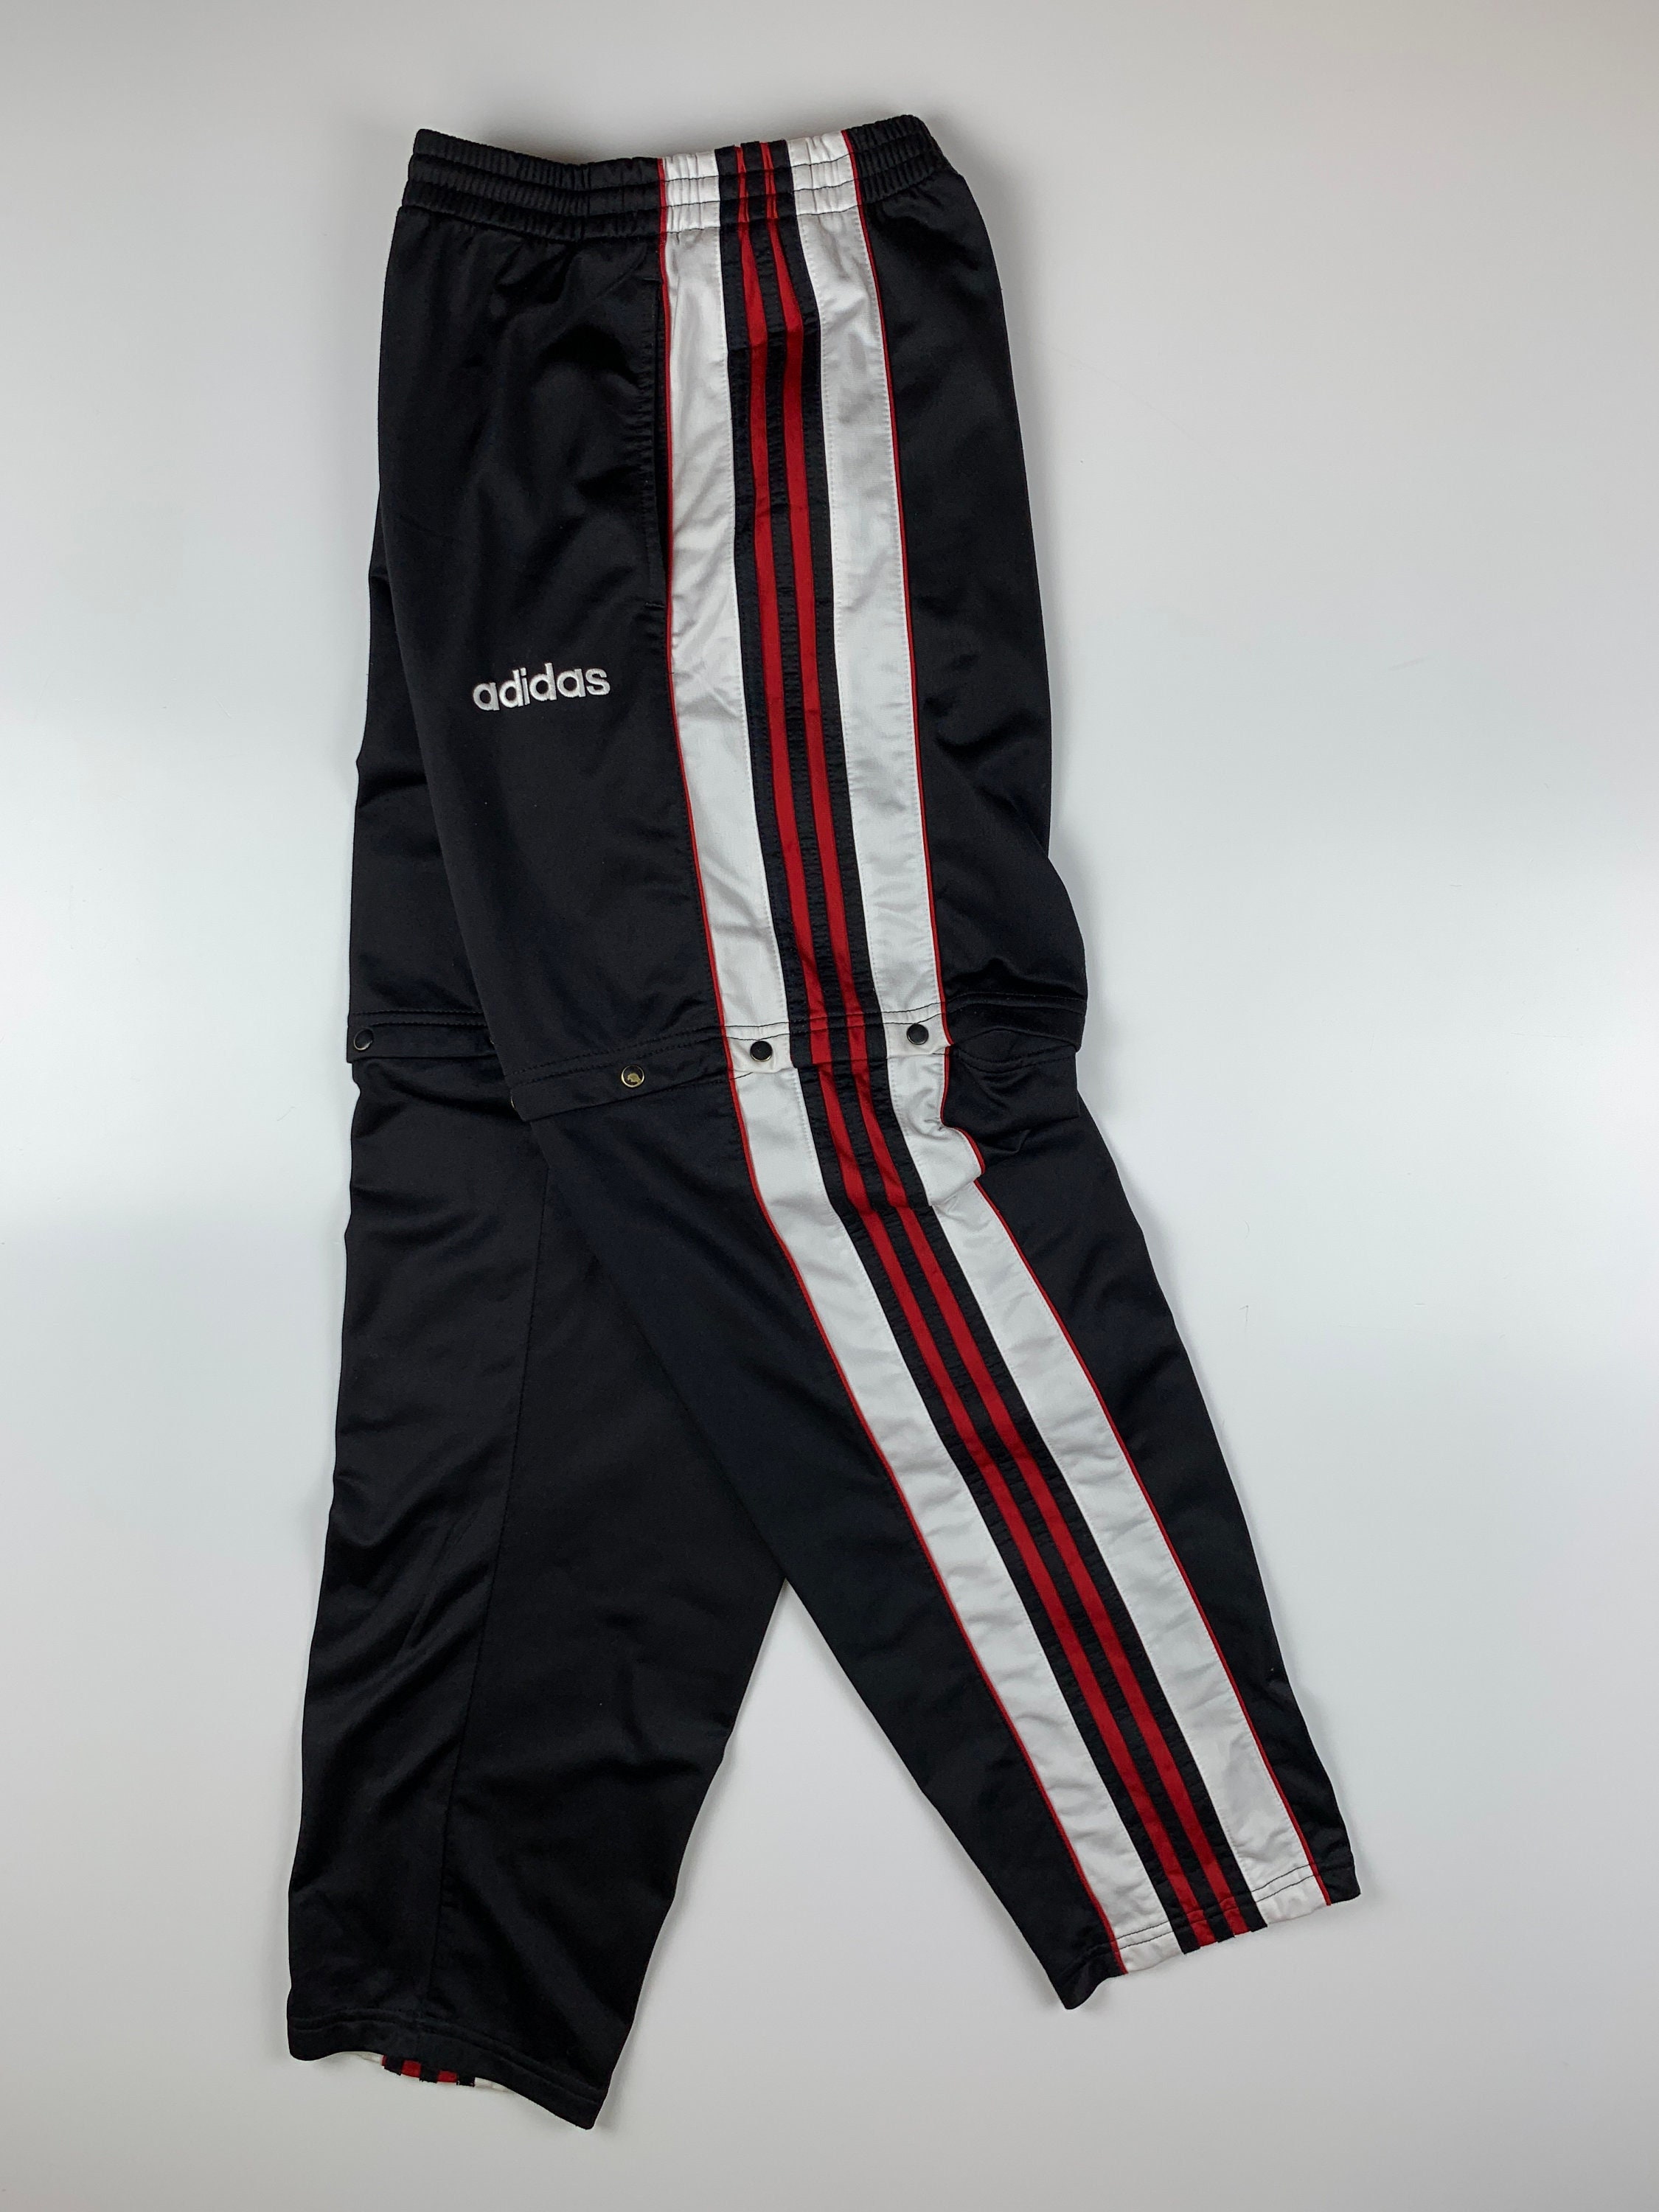 Campanilla Geometría hardware 90's Adidas Vintage Men's Sweatpants Track Pants - Etsy Canada